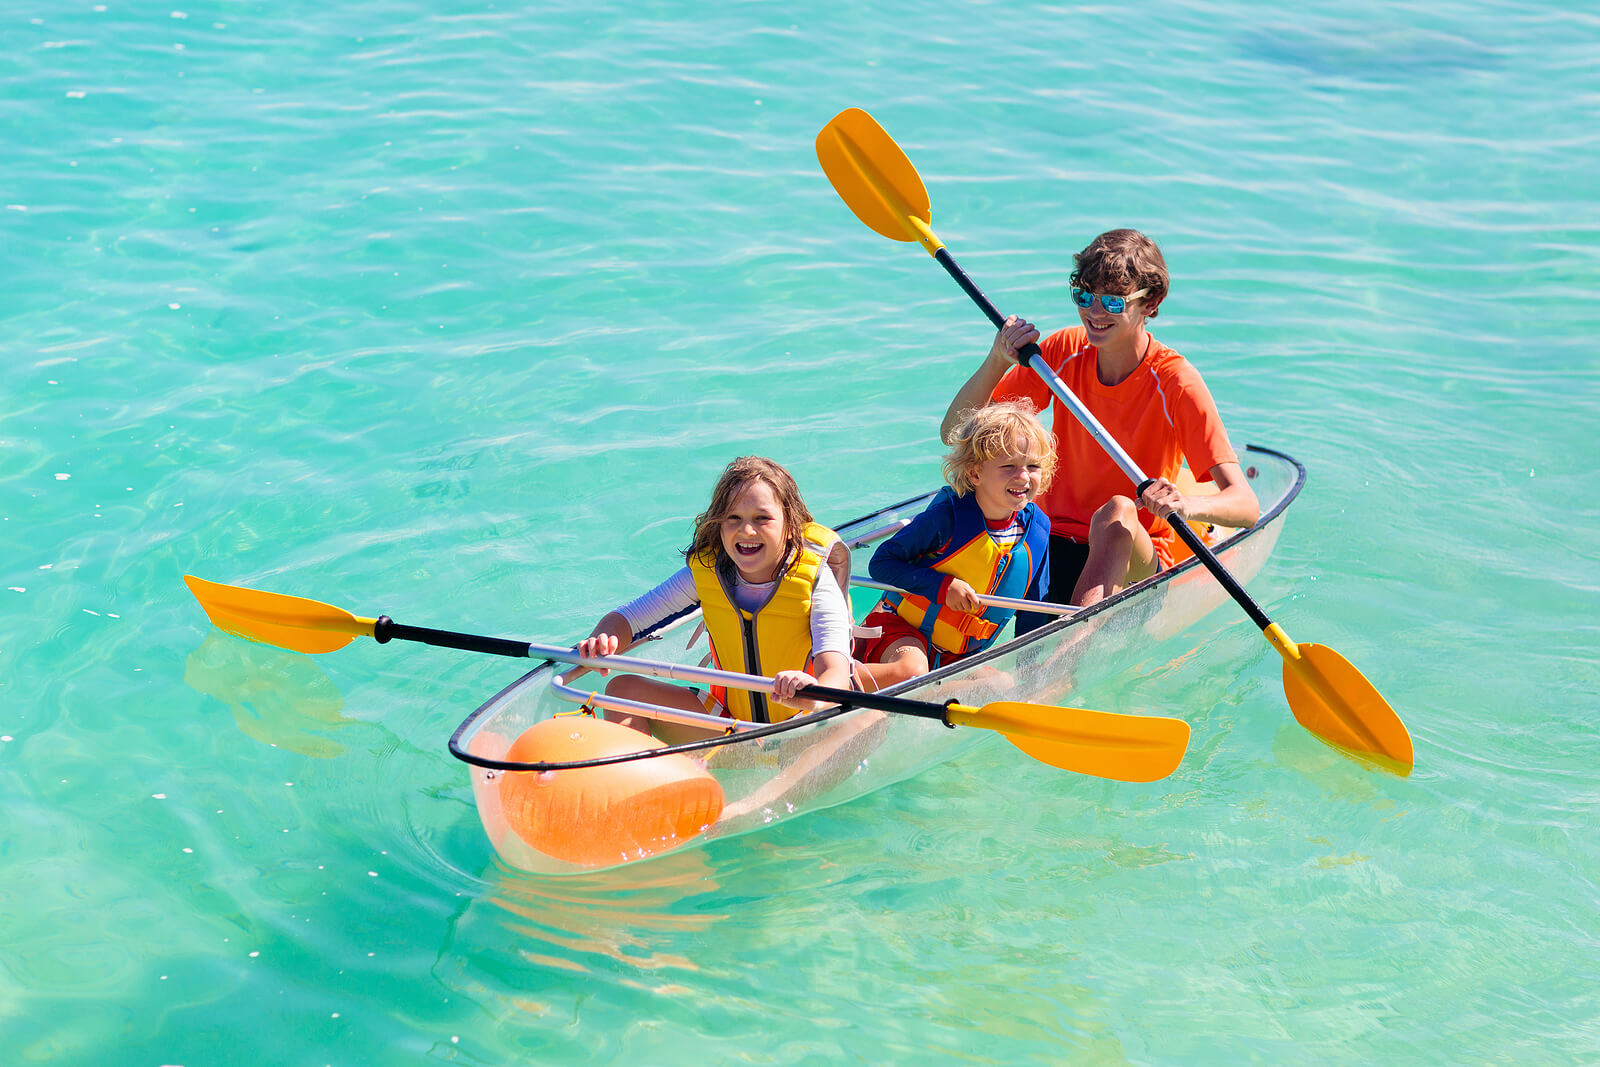 Niño en un kayak gracias a los beneficios de practicar deporte.